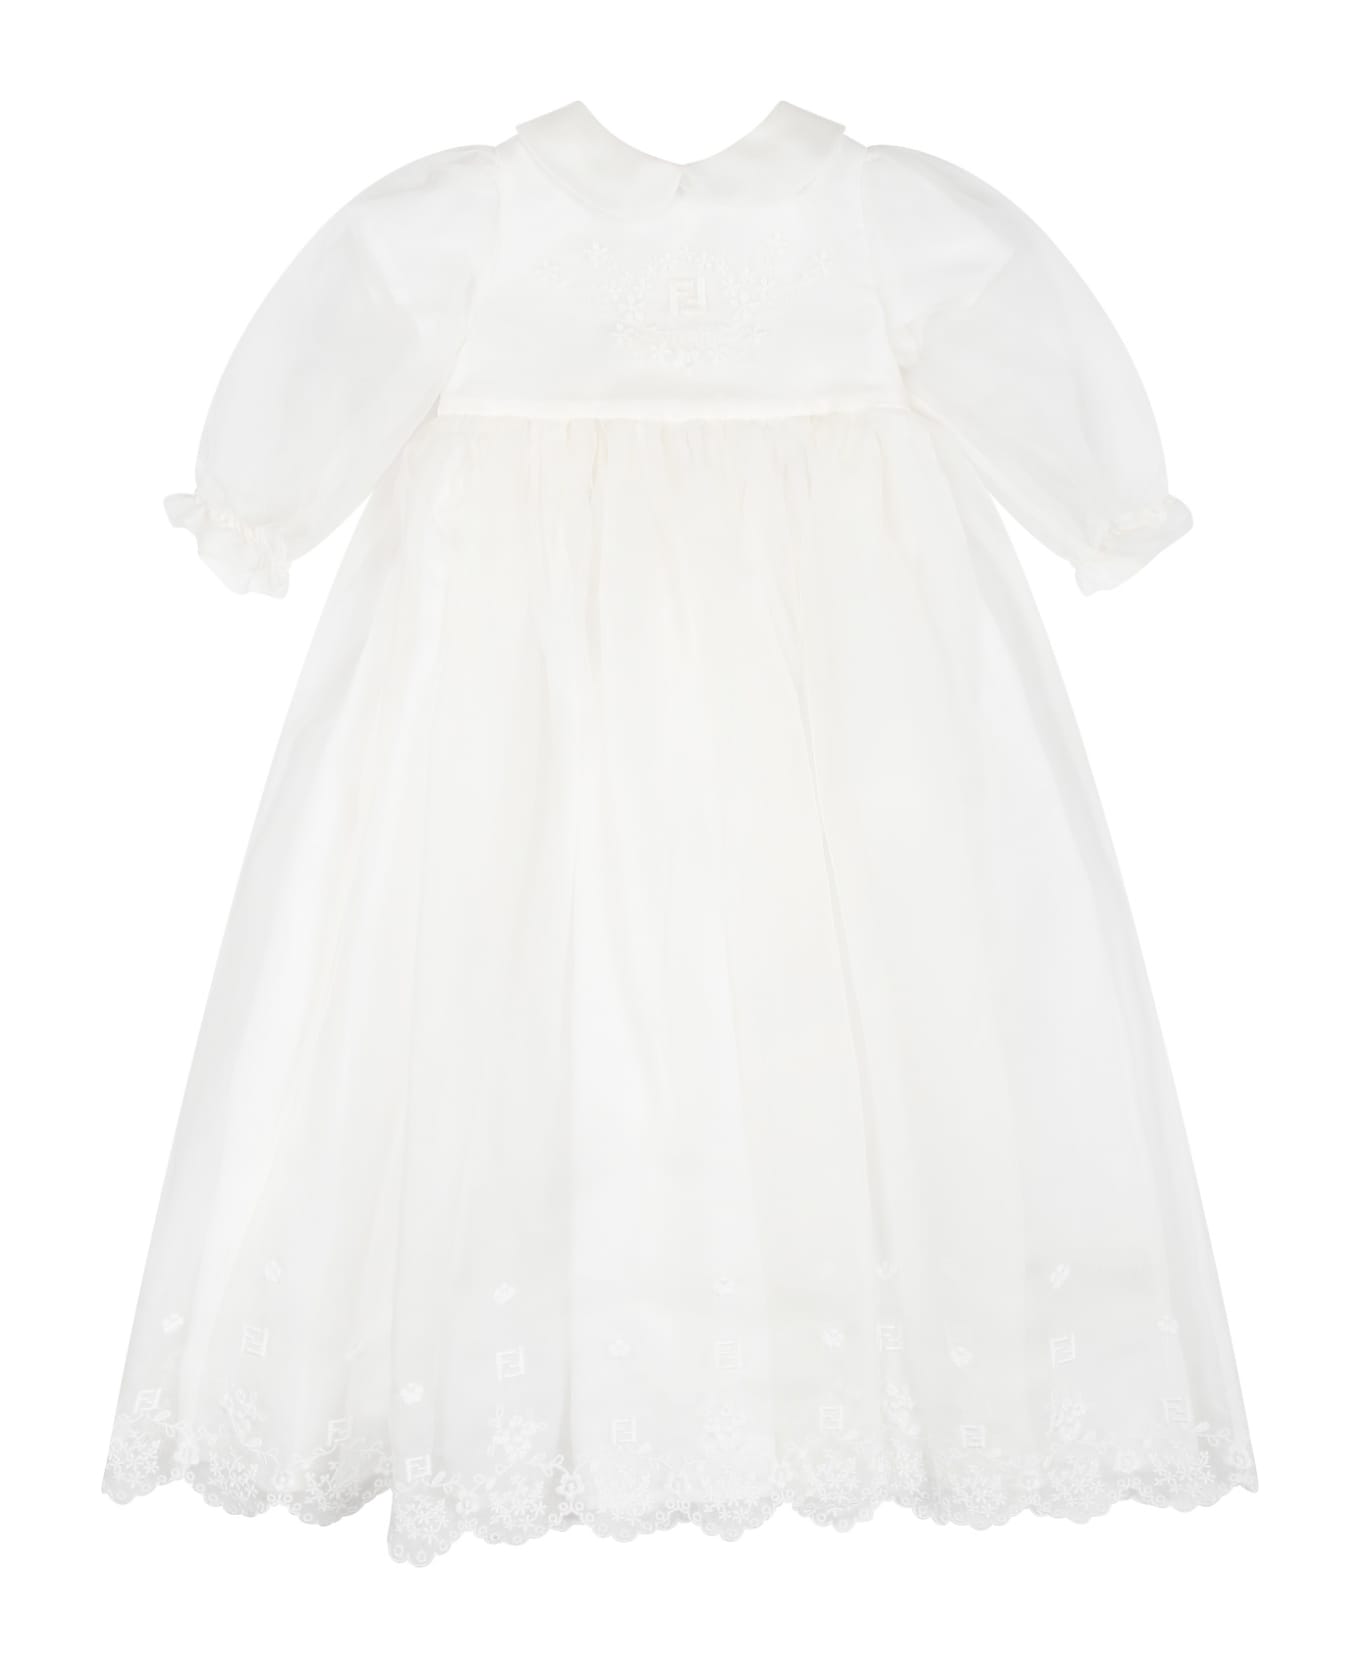 Fendi White Dress For Baby Girl - White